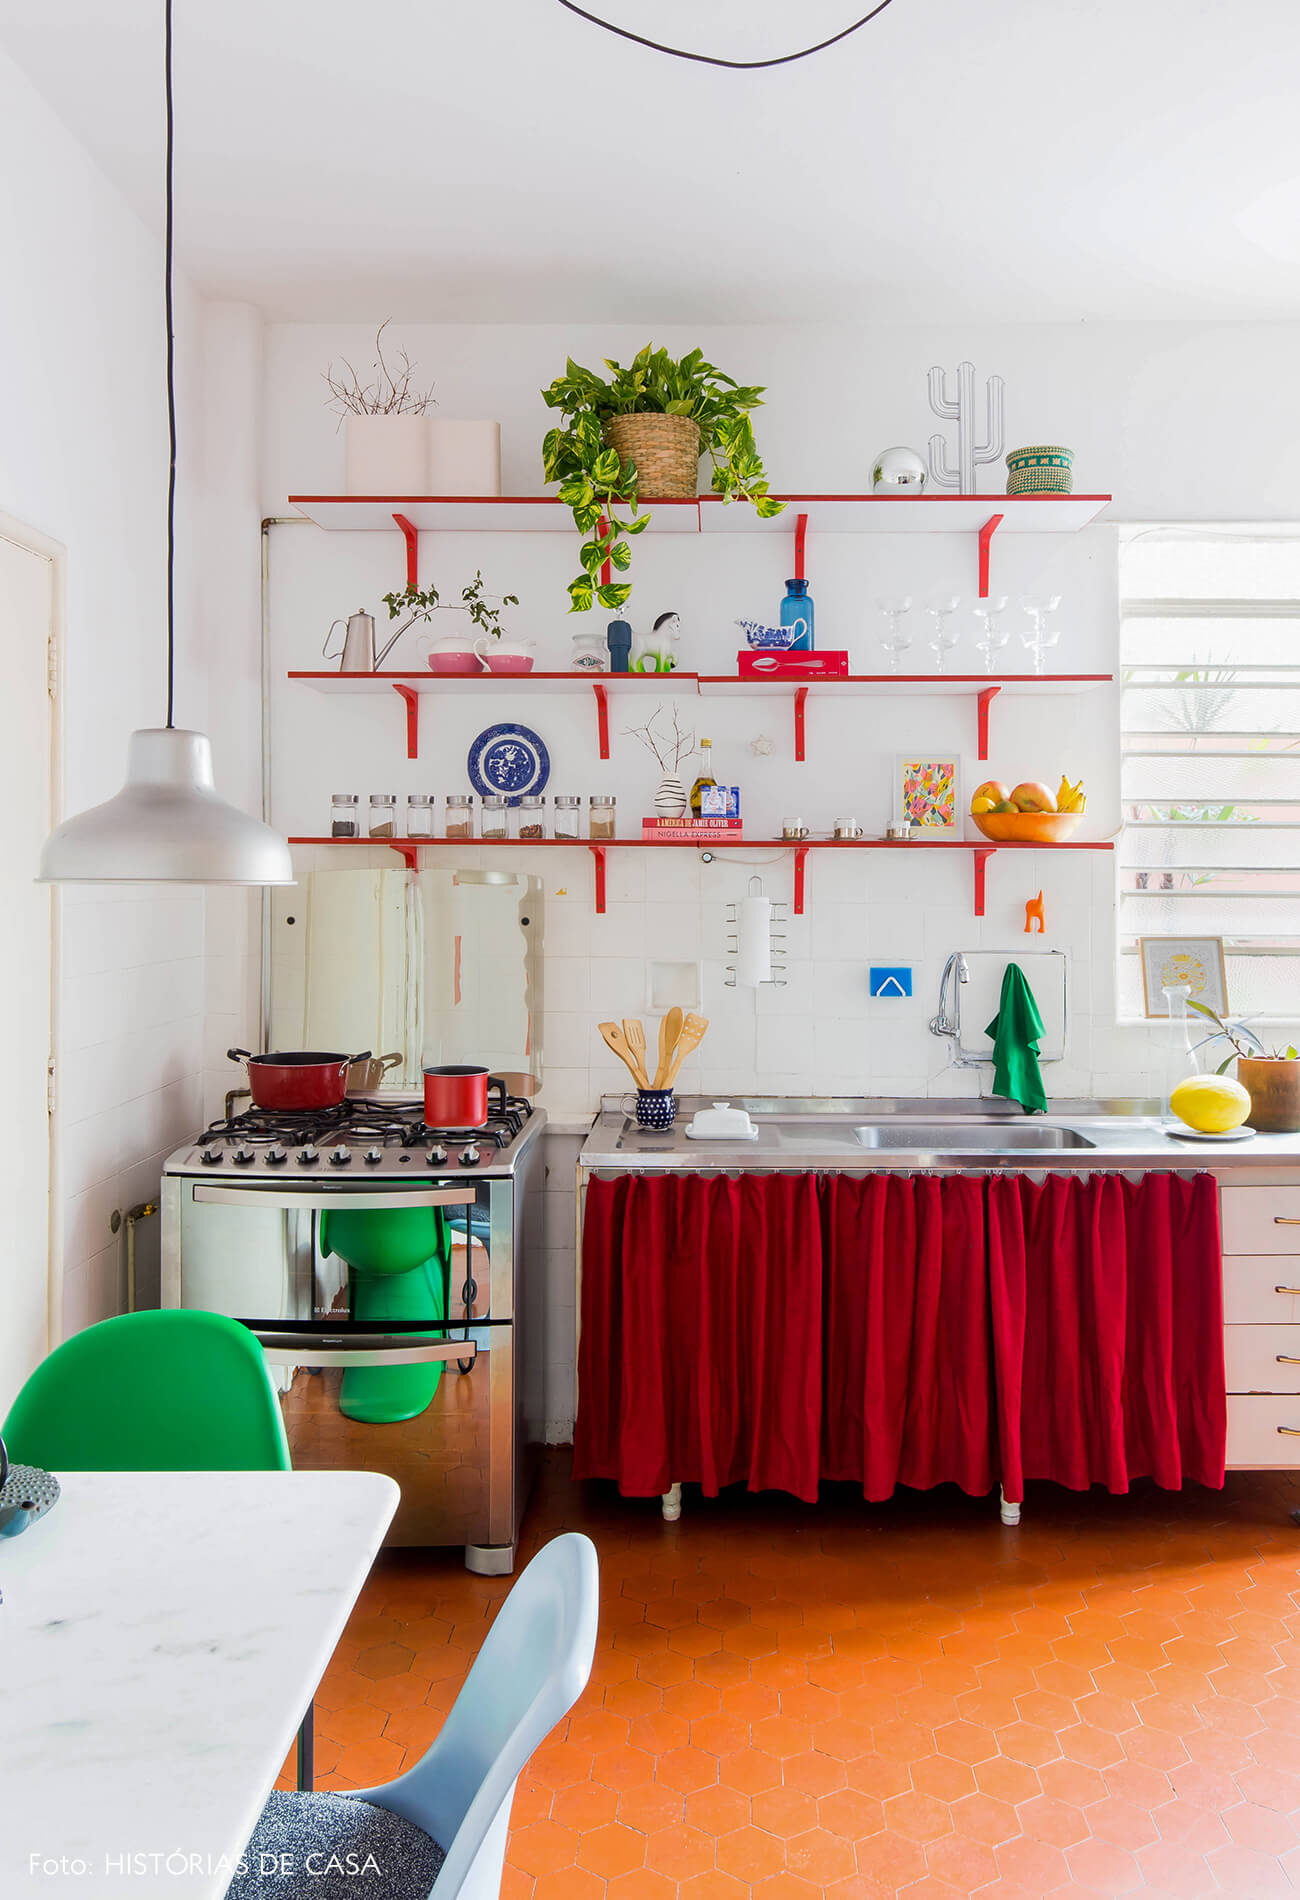 Cozinha com prateleiras coloridas e abertas